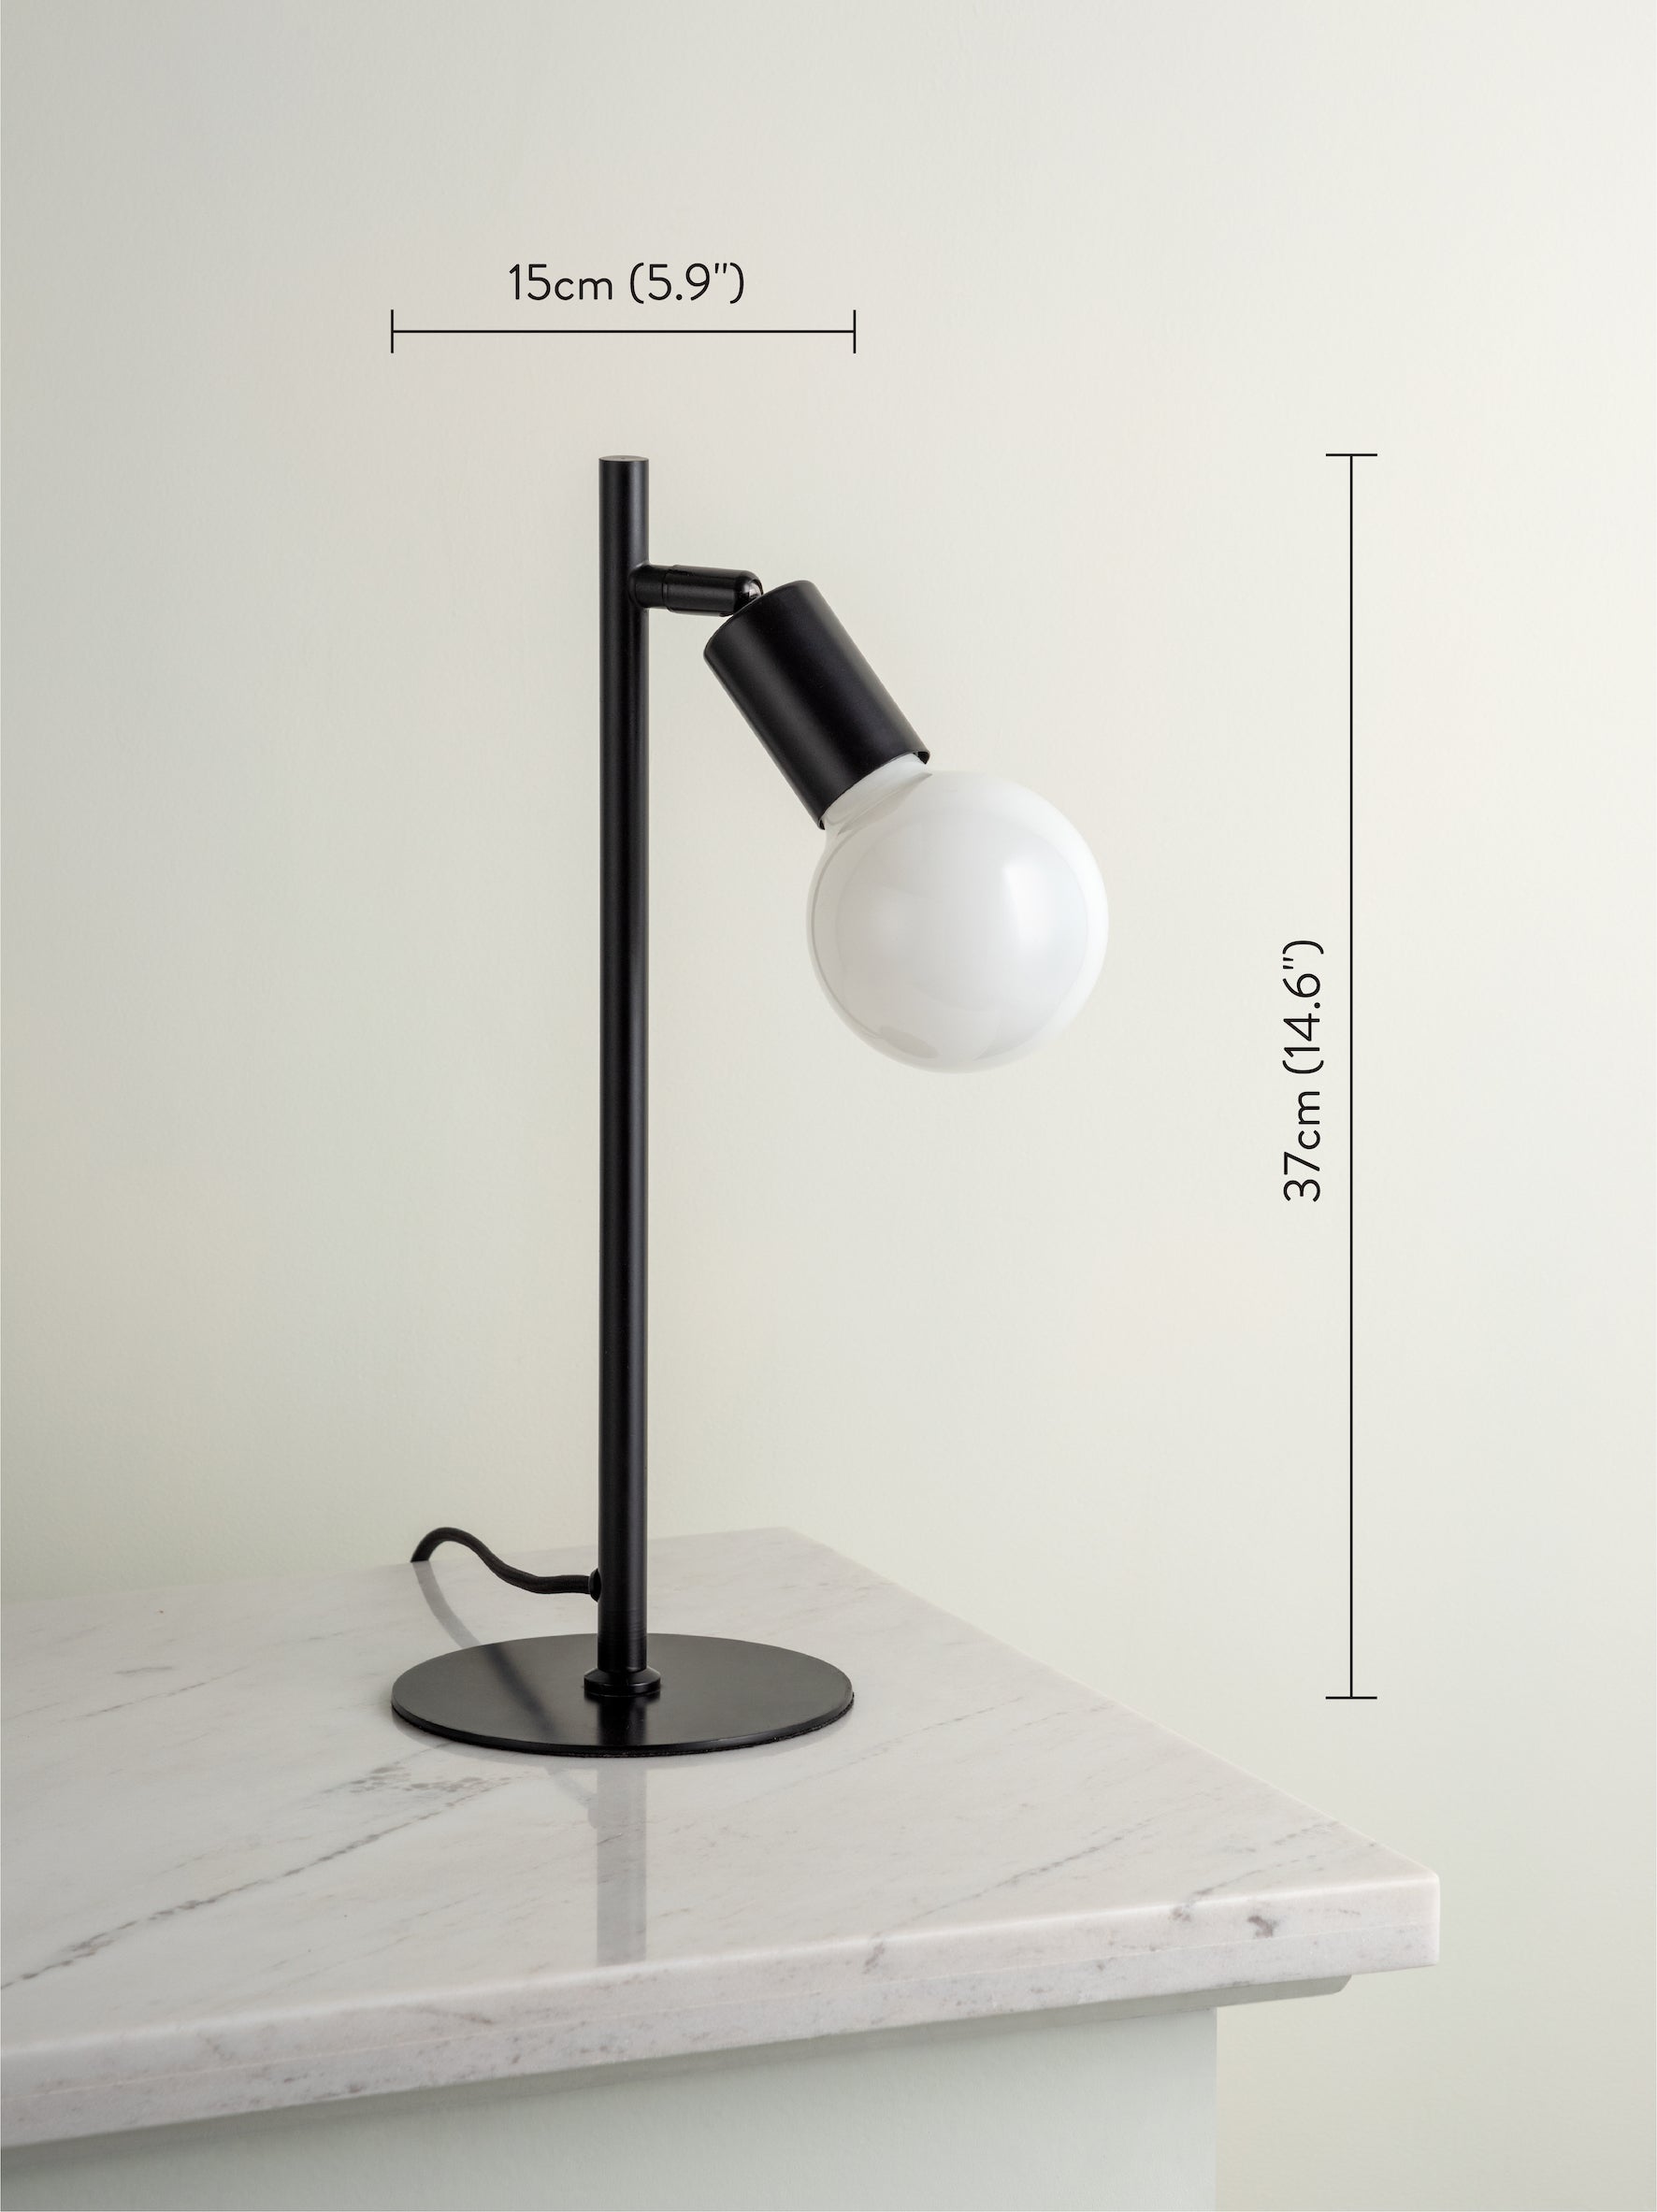 Lever - 1 light matt black task table lamp | Table Lamp | Lights & Lamps | UK | Modern Affordable Designer Lighting